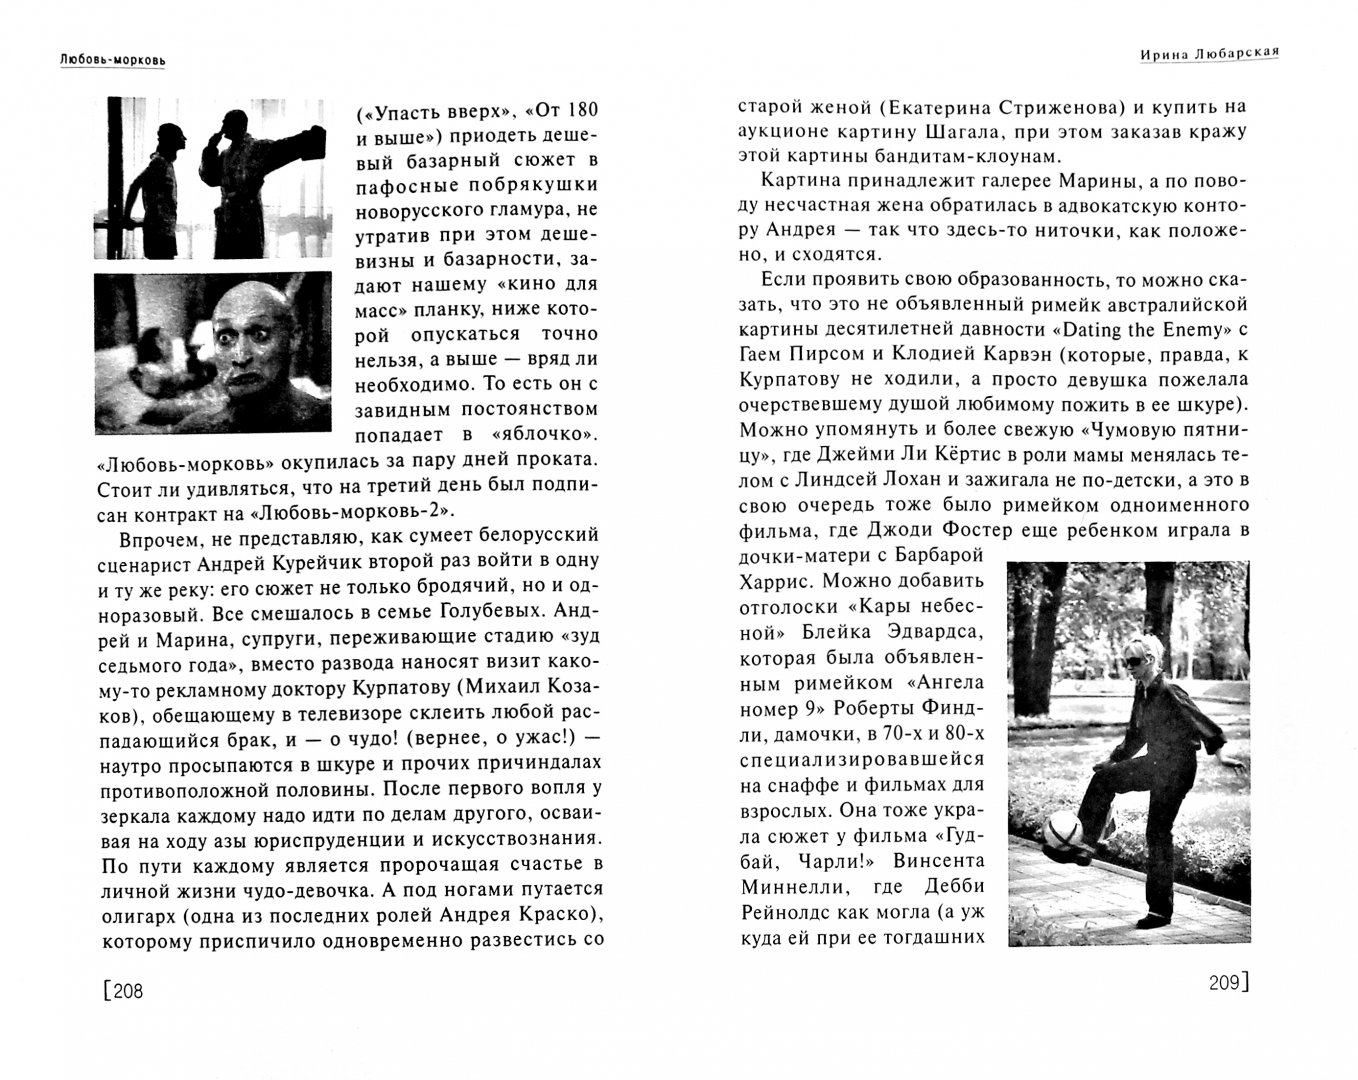 Иллюстрация 1 из 5 для Сеанс guide. Российские фильмы 2007 - Востриков, Степанов, Борисов | Лабиринт - книги. Источник: Лабиринт